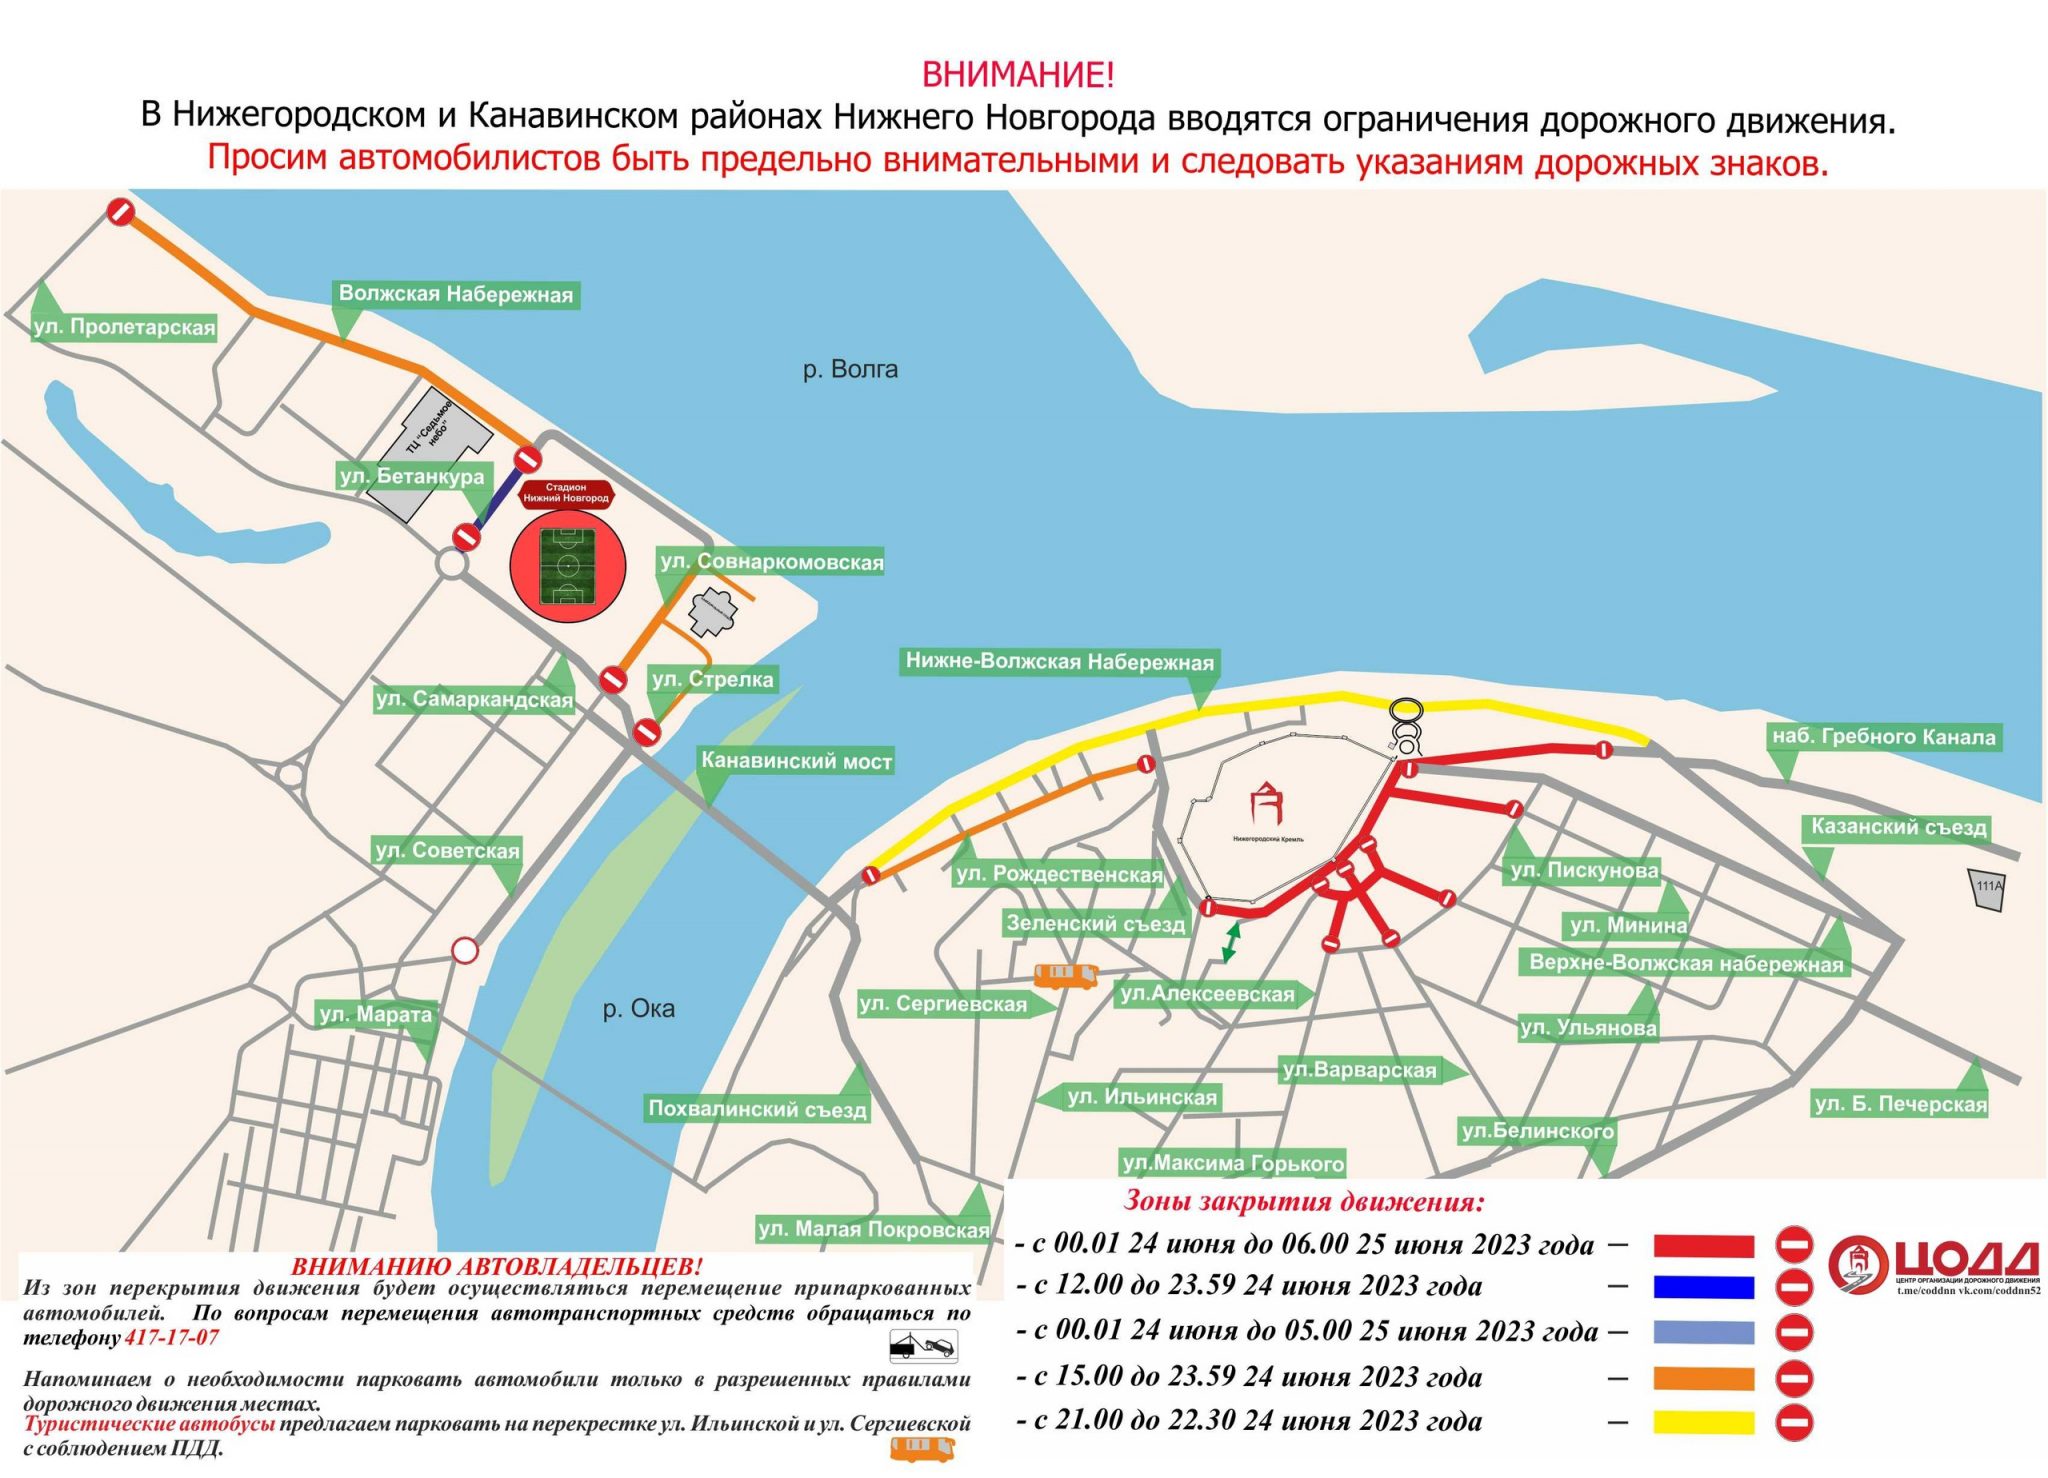 25 06 2023. Перекрытие движения. Карта Нижнего Новгорода 2023 года. Схема перекрытия городских дорог. Перекрытие дорог 24 июня 2023.